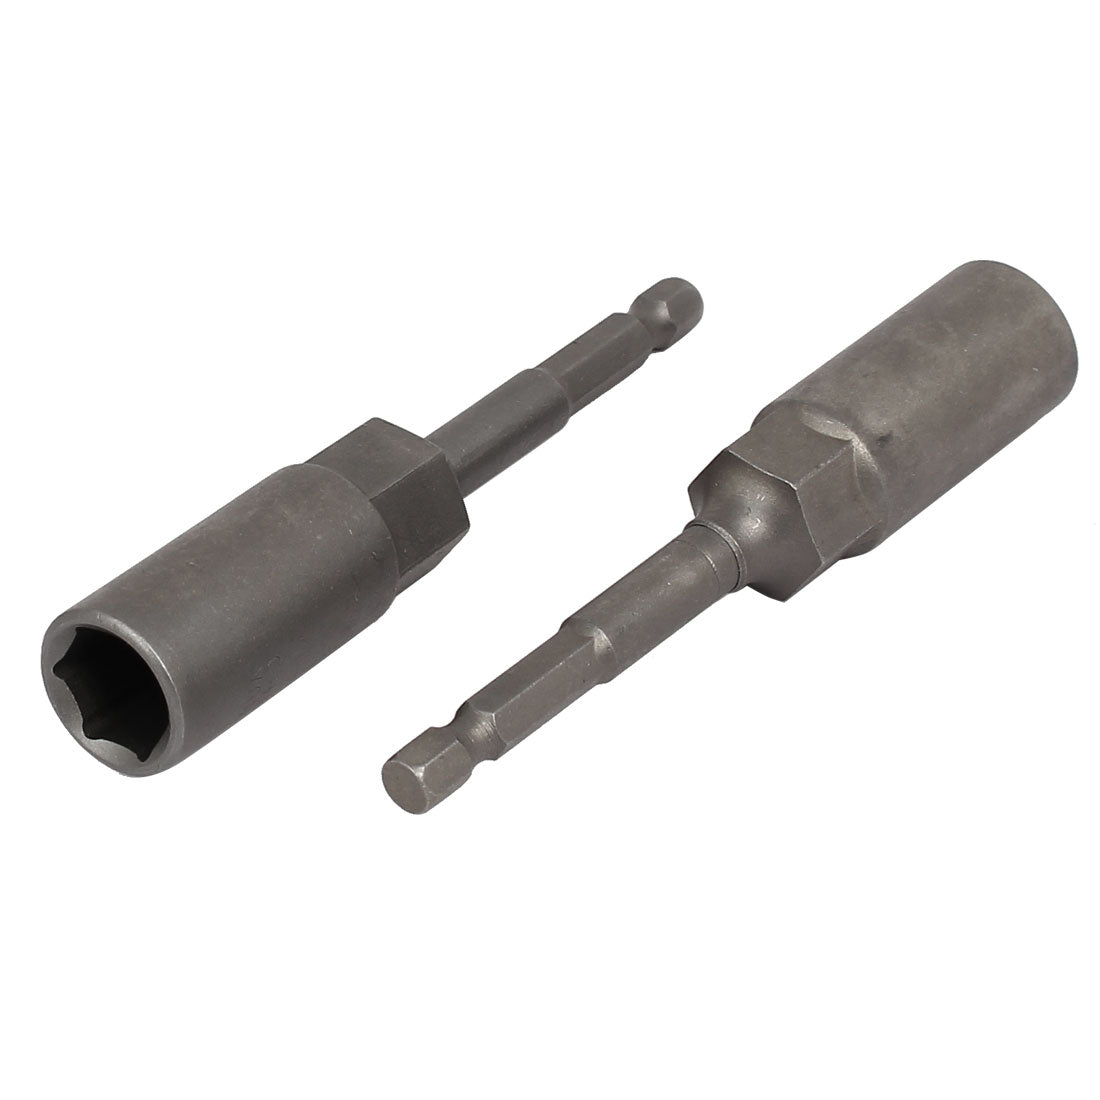 uxcell Uxcell 100mmx13mm Metal Screwdriver Drill Hex Nut Driver Socket Bit 2PCS Gray